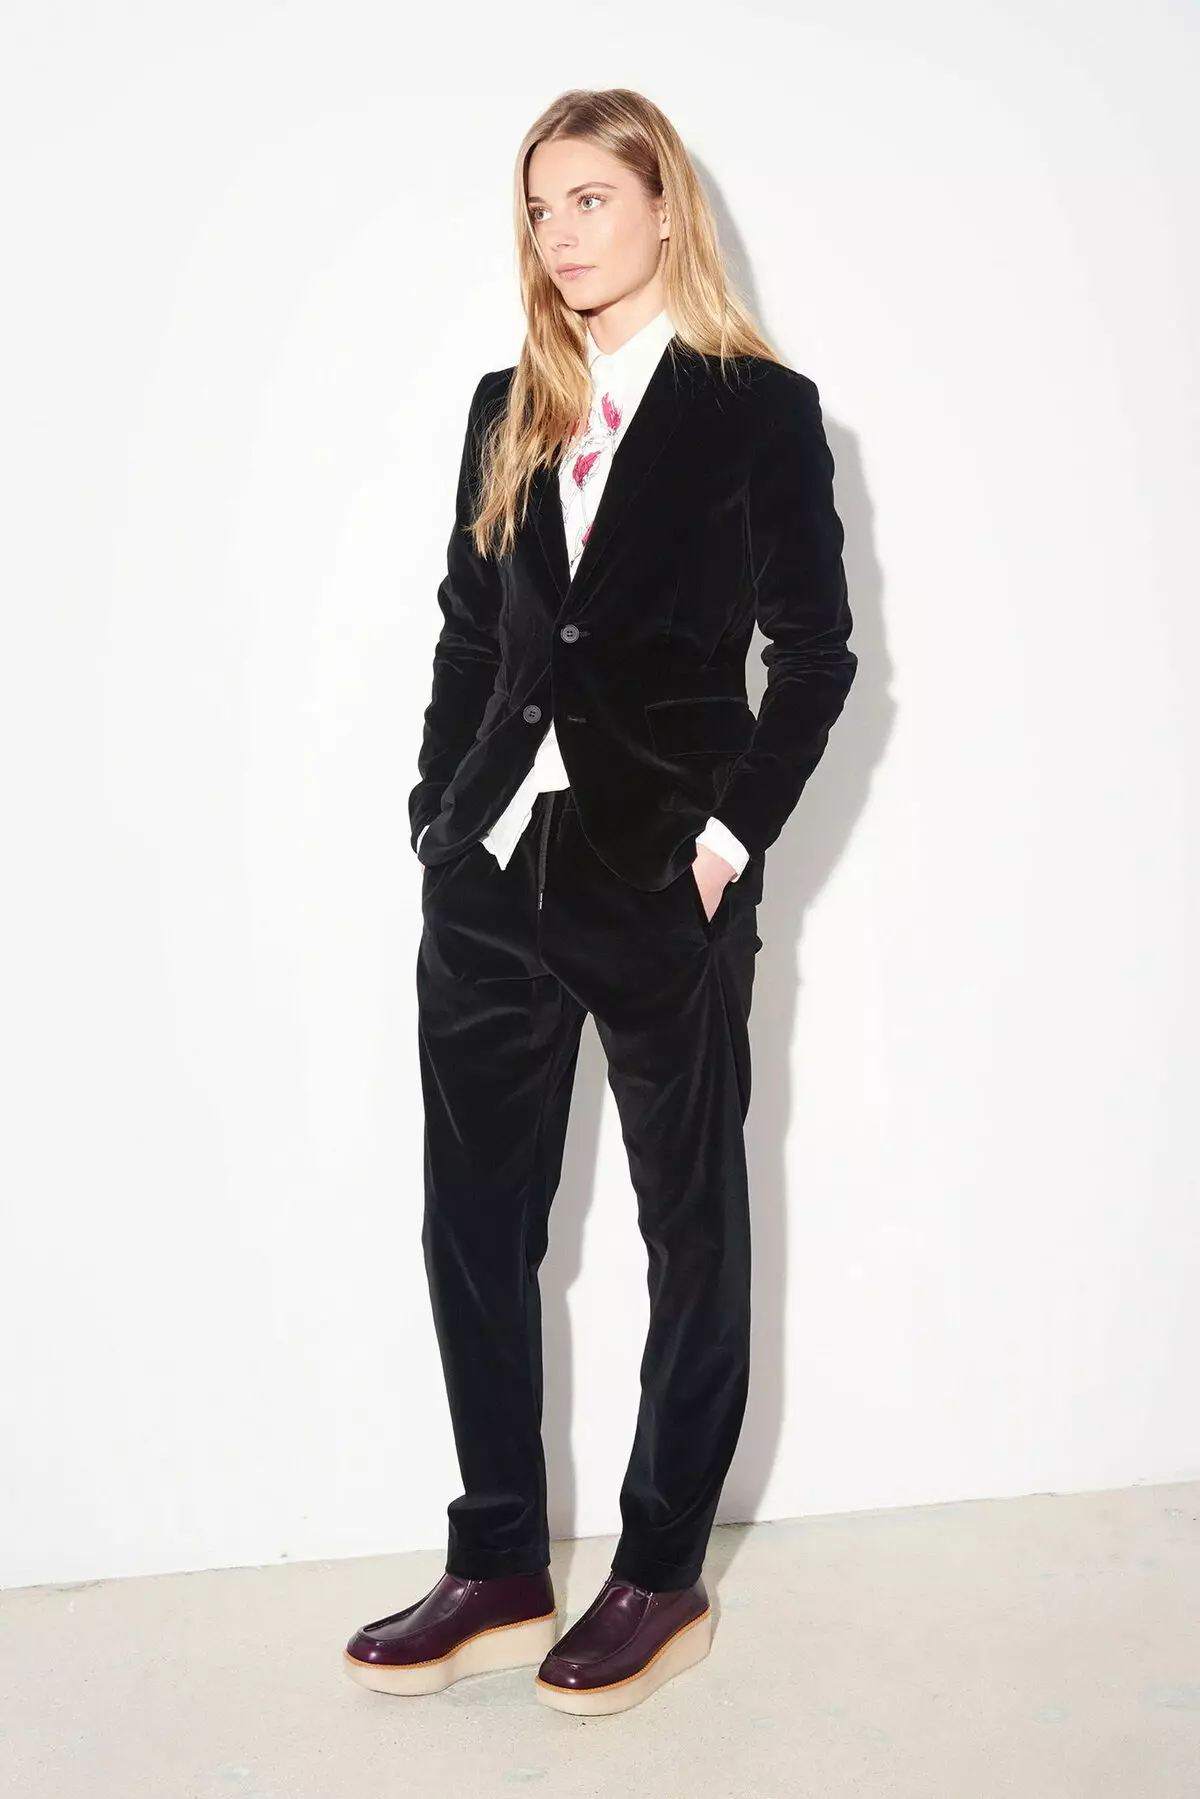 Trououser အမျိုးသမီးဝတ်စုံများ 2021 (242 ဓာတ်ပုံ) - အသစ်နှင့်ဖက်ရှင်ခေတ်ရေစီးကြောင်း, Chanel စတိုင် 14844_129